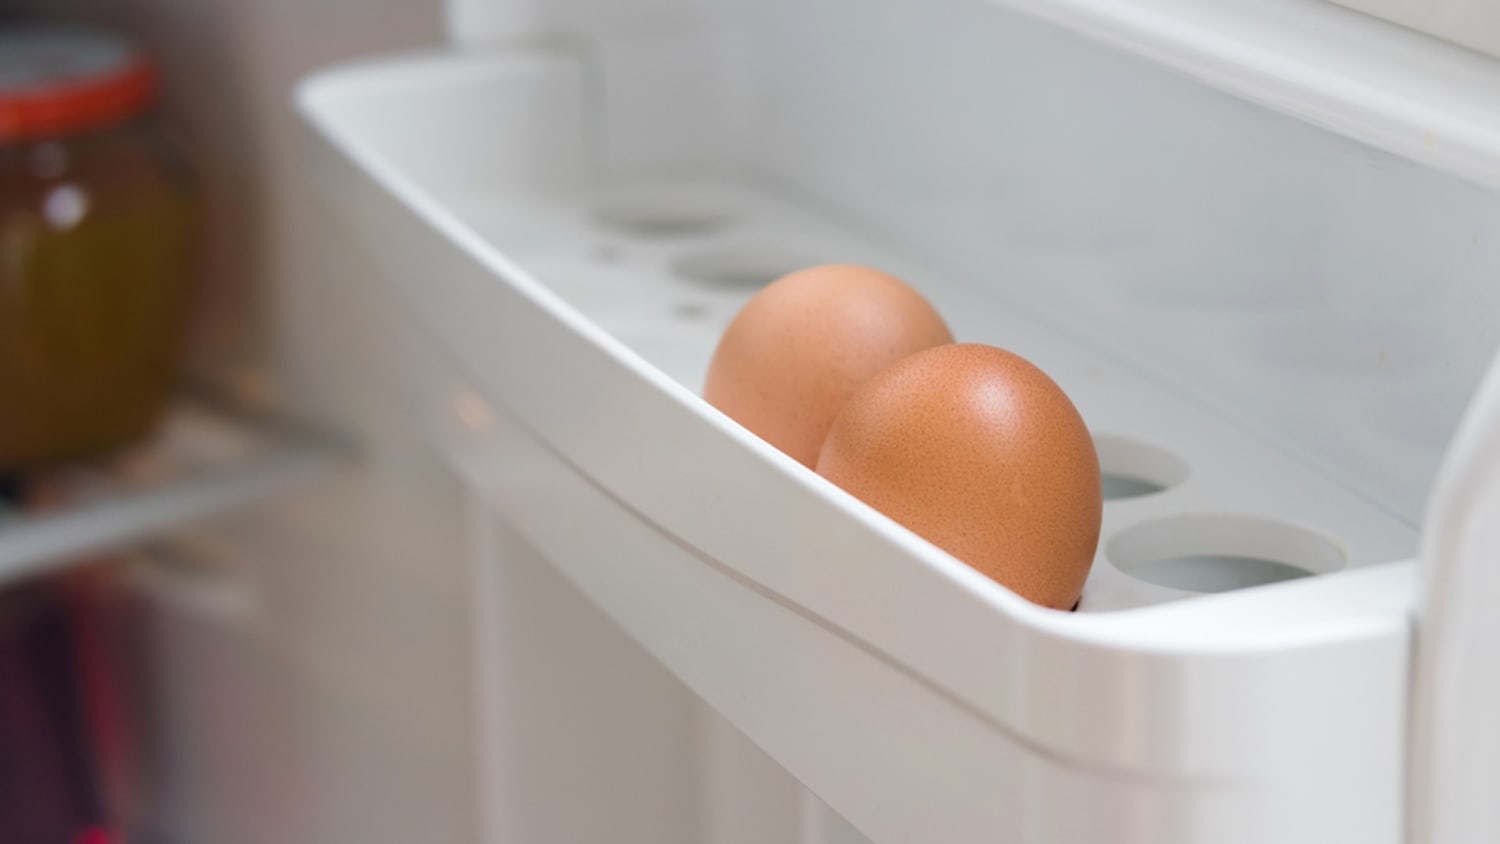 https://media-cldnry.s-nbcnews.com/image/upload/newscms/2016_17/1068436/eggs-in-fridge-tease-today-160428.jpg